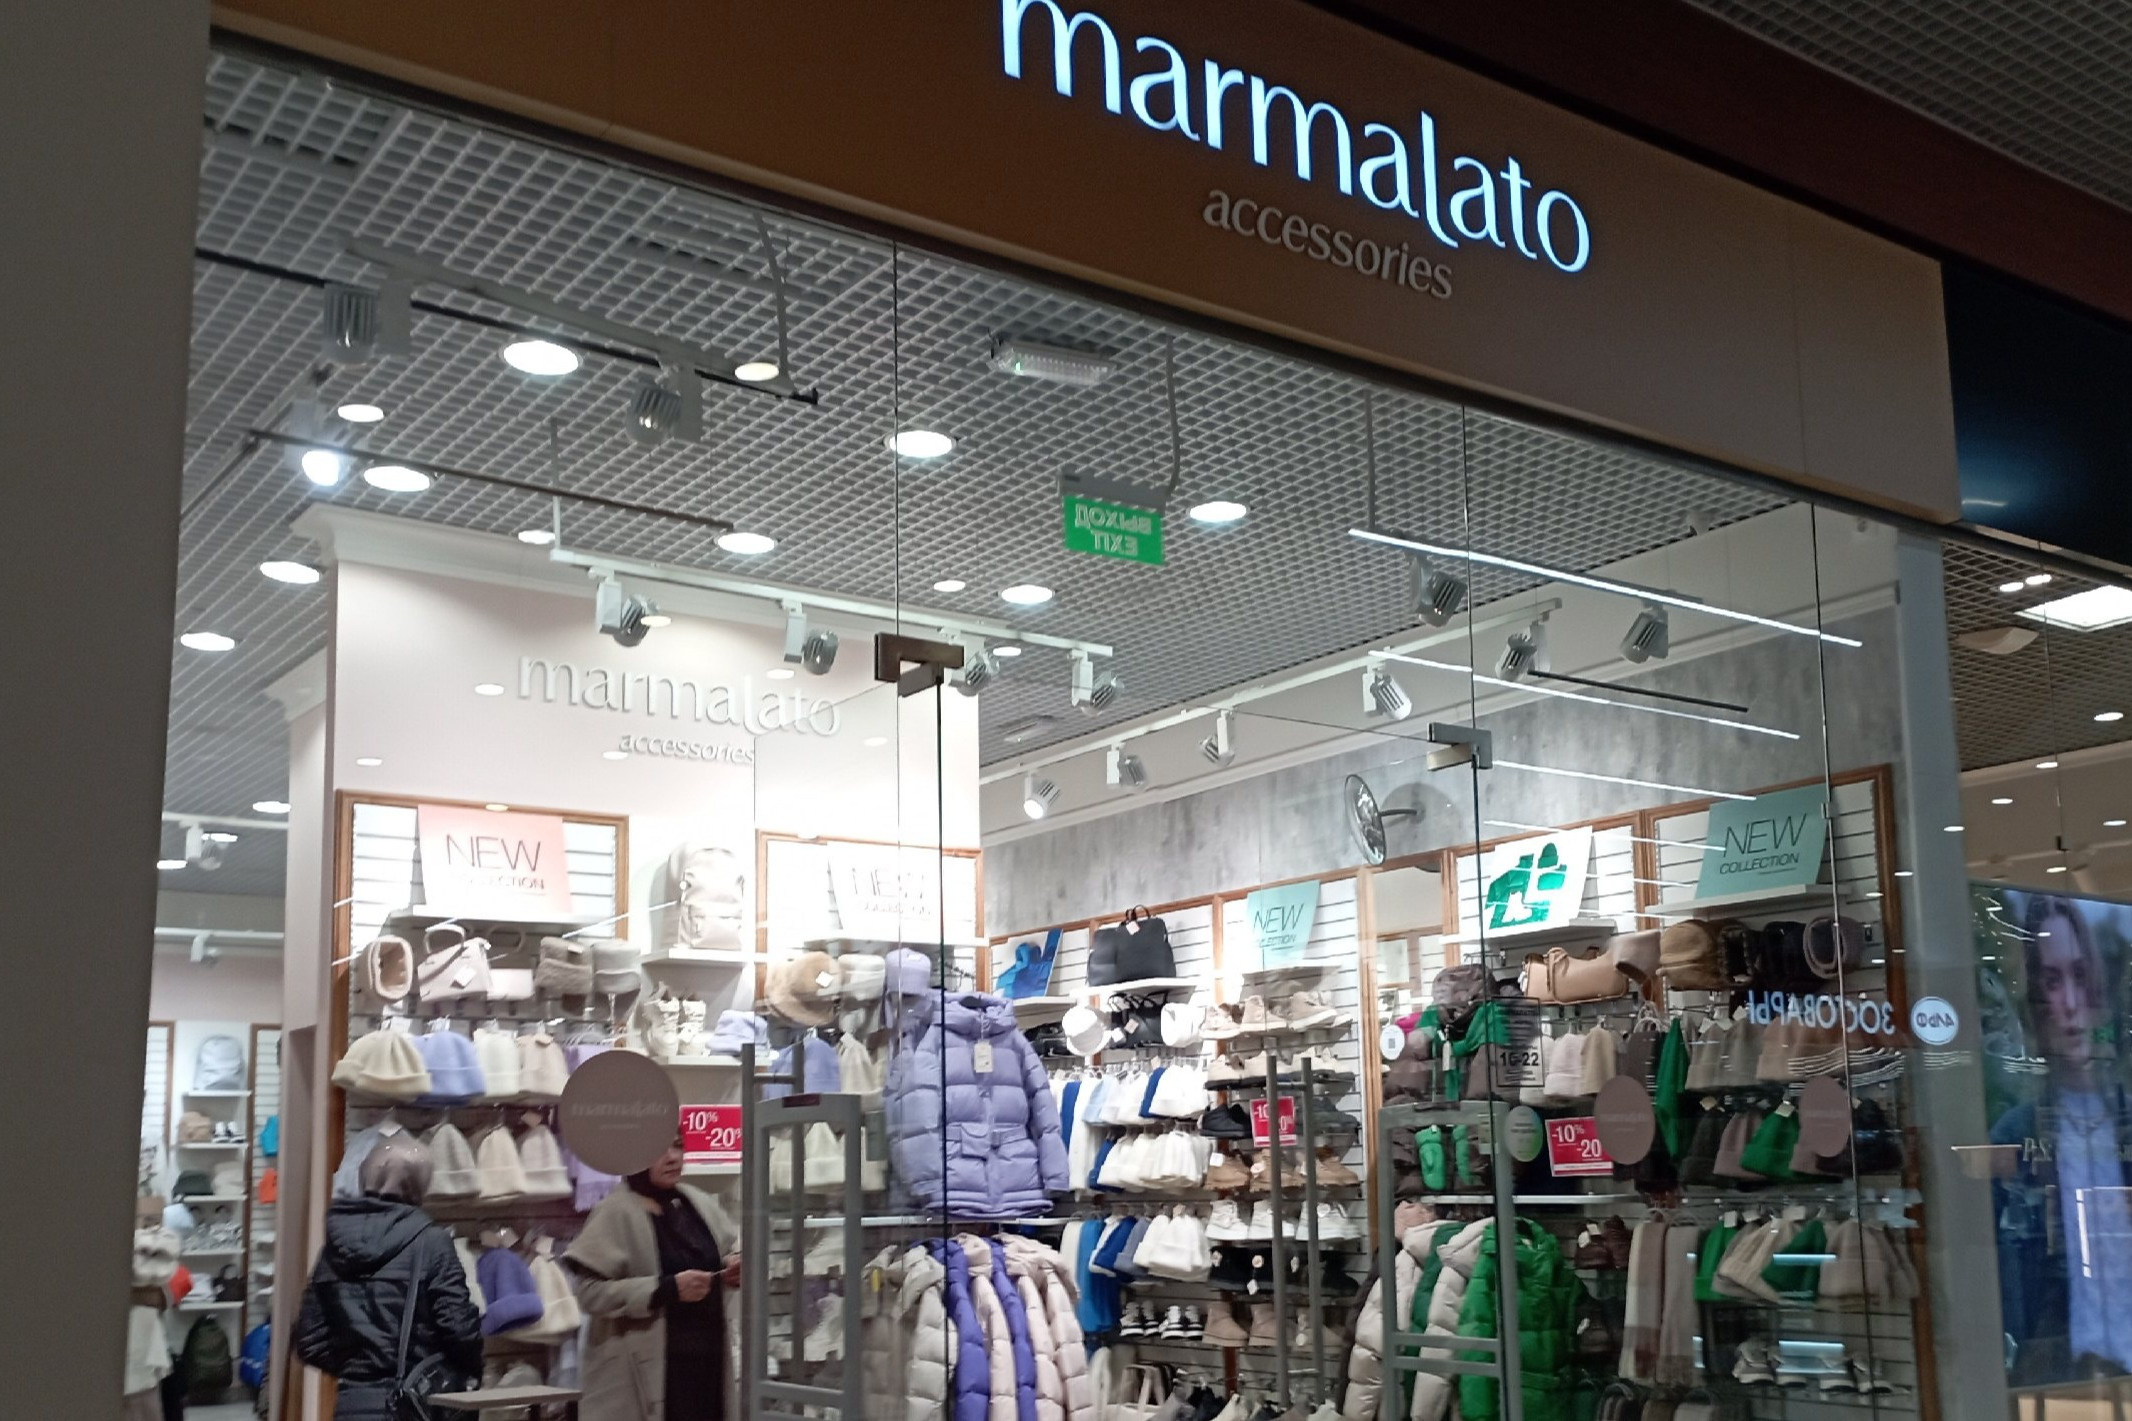 В Marmalato много ярких пуховиков, но и нейтральные оттенки заслуживают внимания